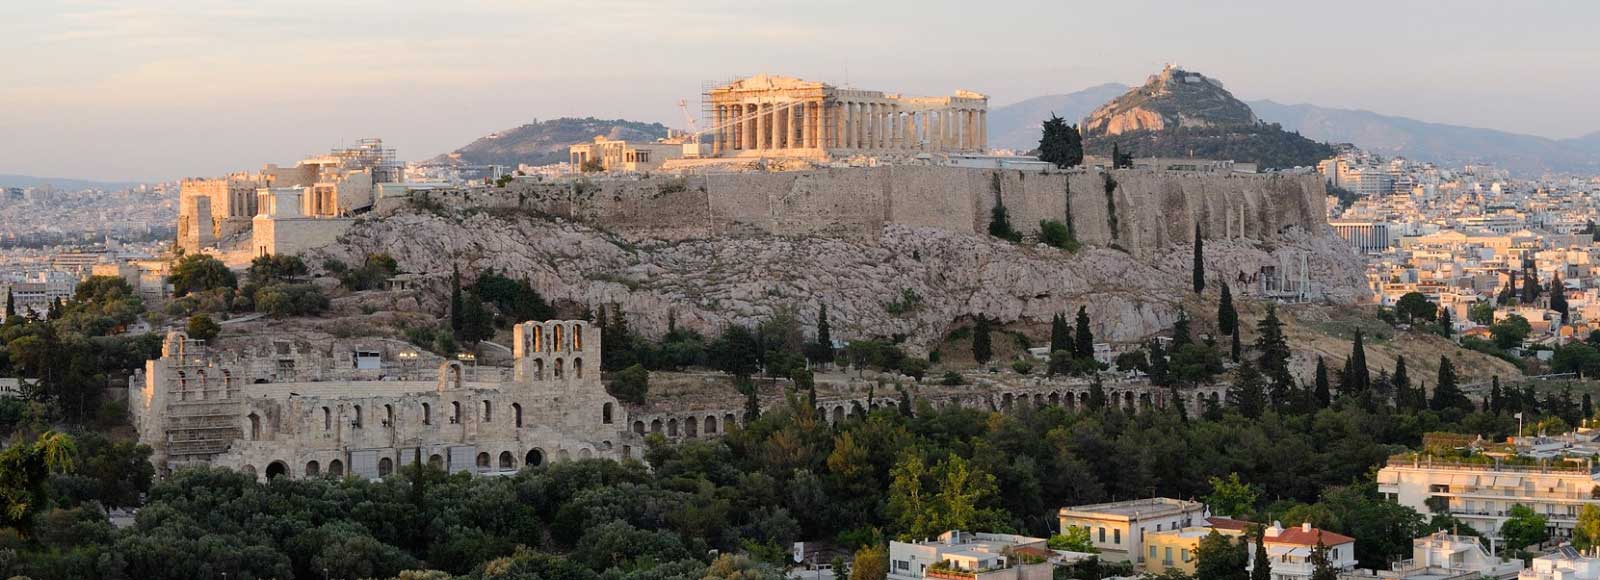 Ofertas de Traslados en Atenas. Traslados económicos en Atenas 